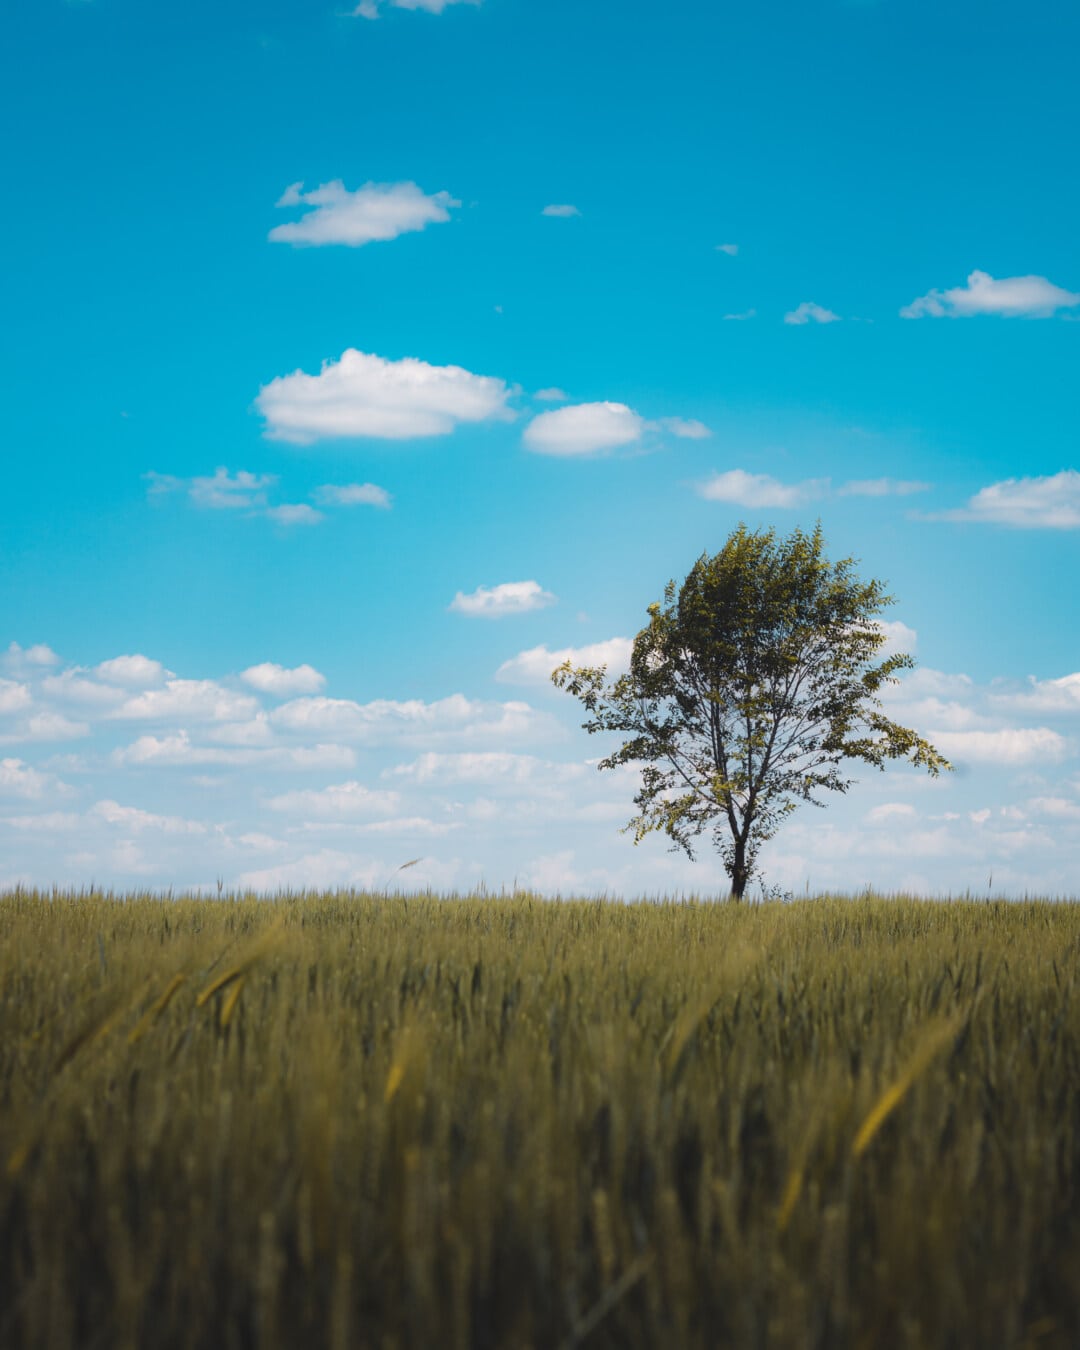 magányos, fa, mezőgazdasági, mező, Wheatfield, tavaszi idő, kék ég, búza, légkör, gabona